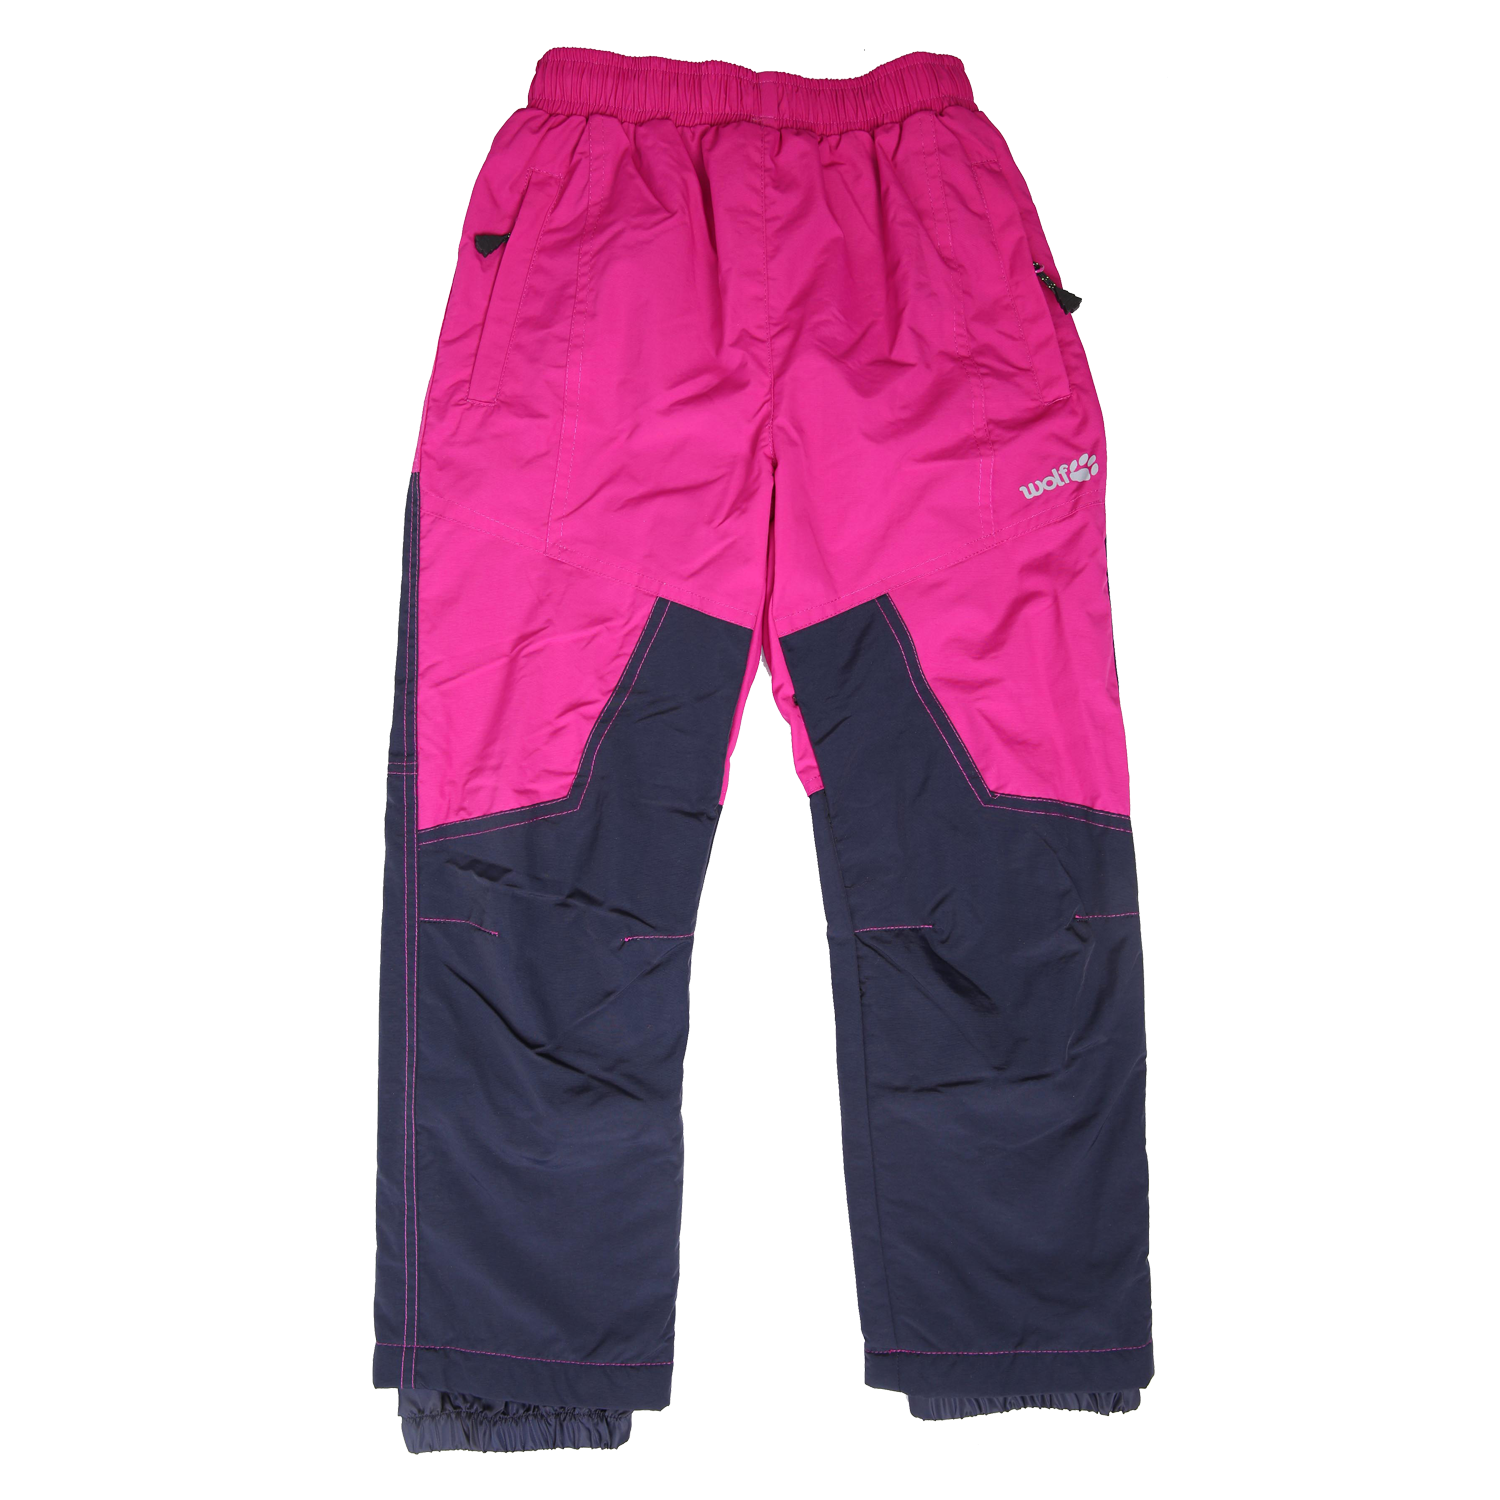 Dívčí šusťákové kalhoty, zateplené - Wolf B2174, fialovorůžová/ tmavě modrá Barva: Fialovorůžová, Velikost: 98